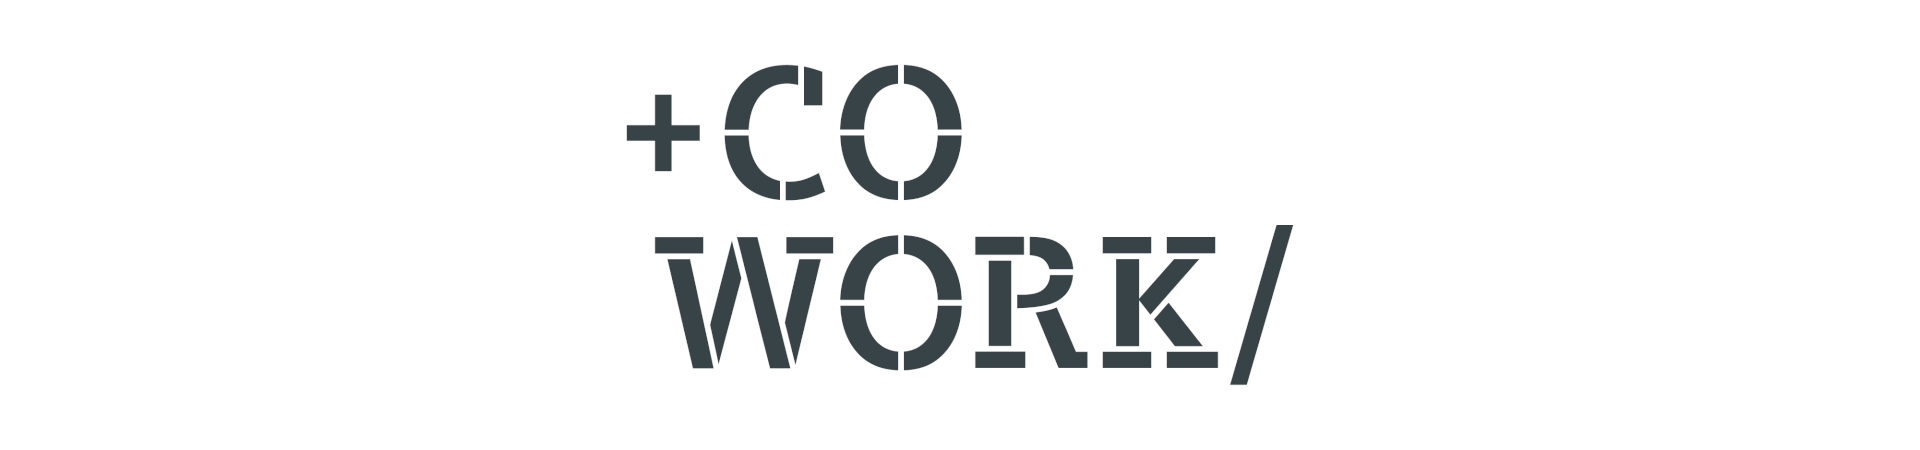 Logo +Cowork/ für Coworking Space Siemens schwarze Schrift auf weißem Hintergrund